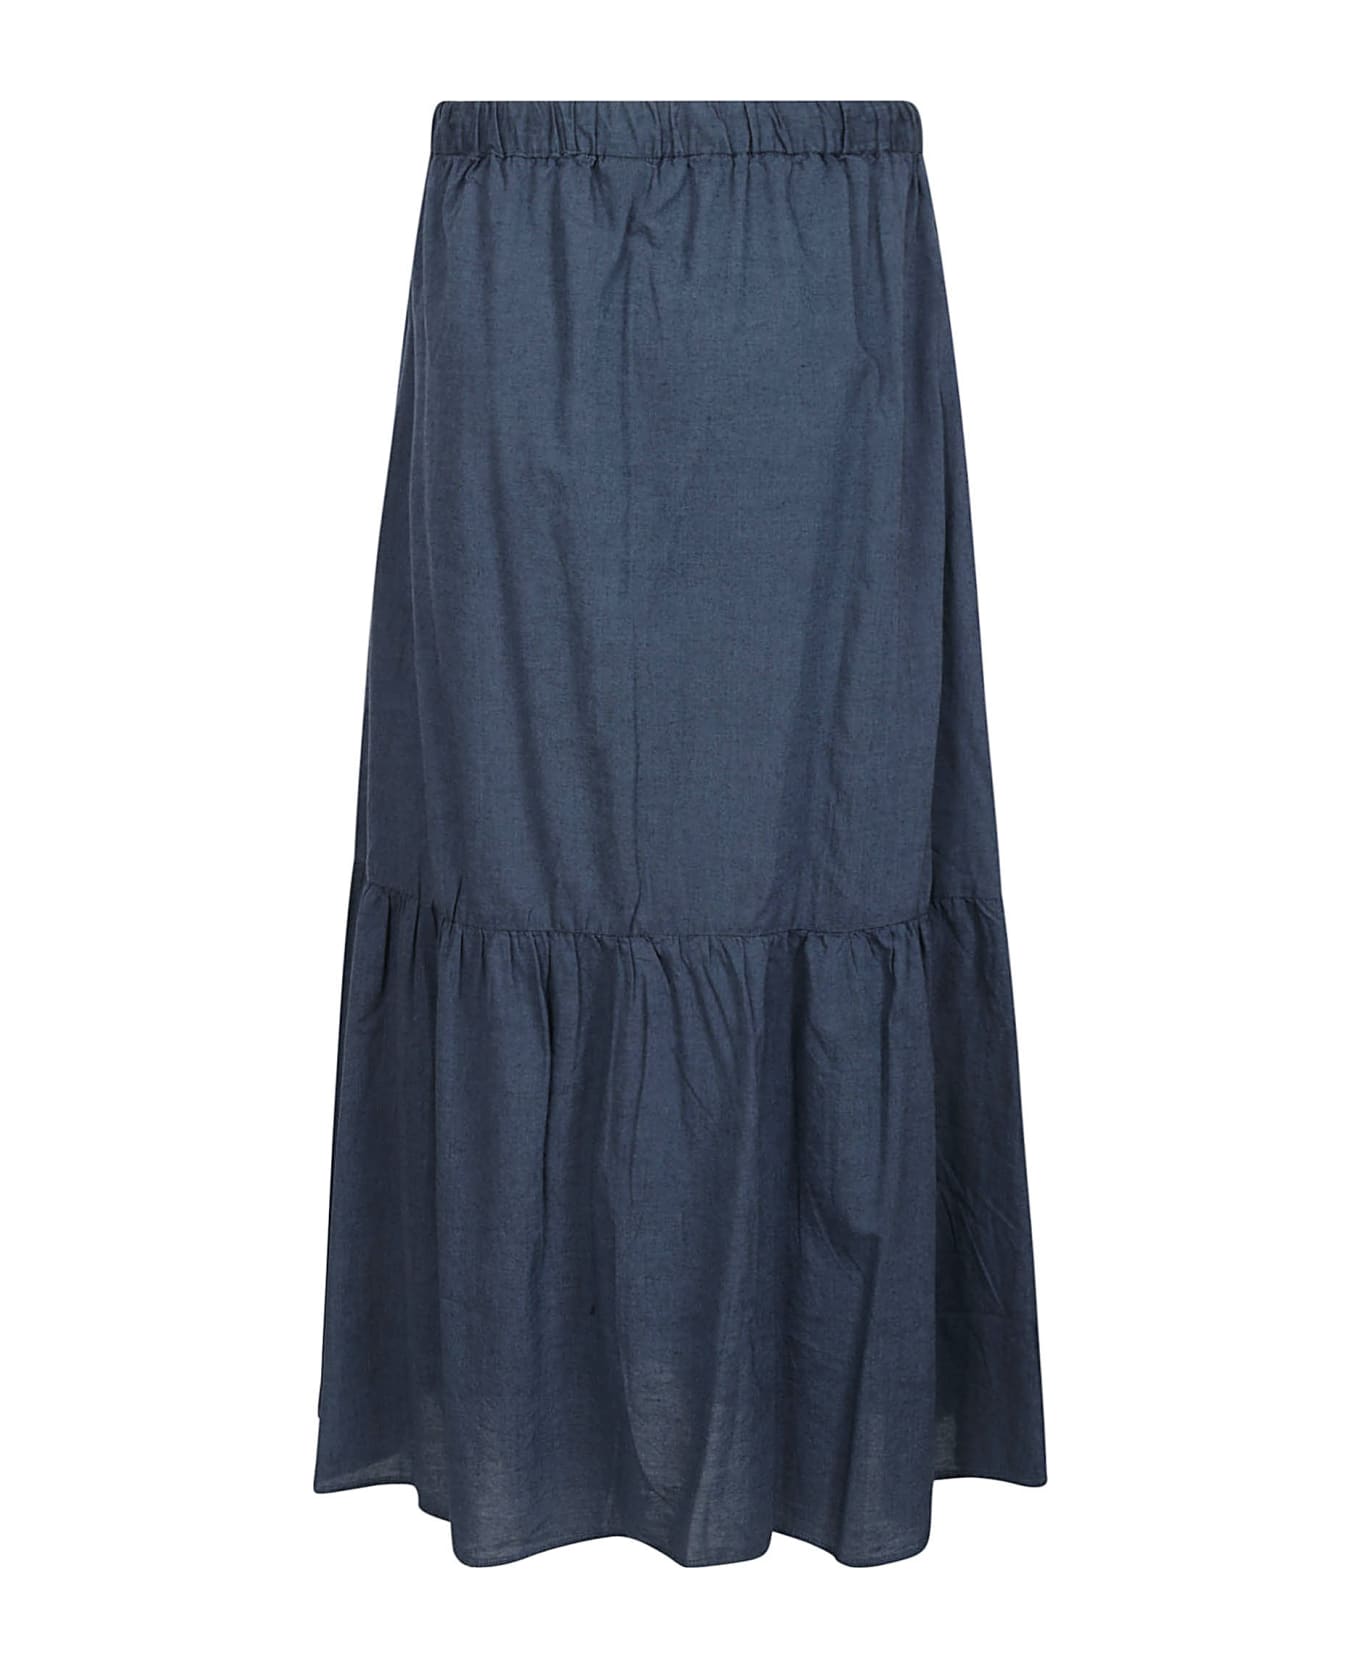 Aspesi Skirt Mod.2226 - Blue スカート